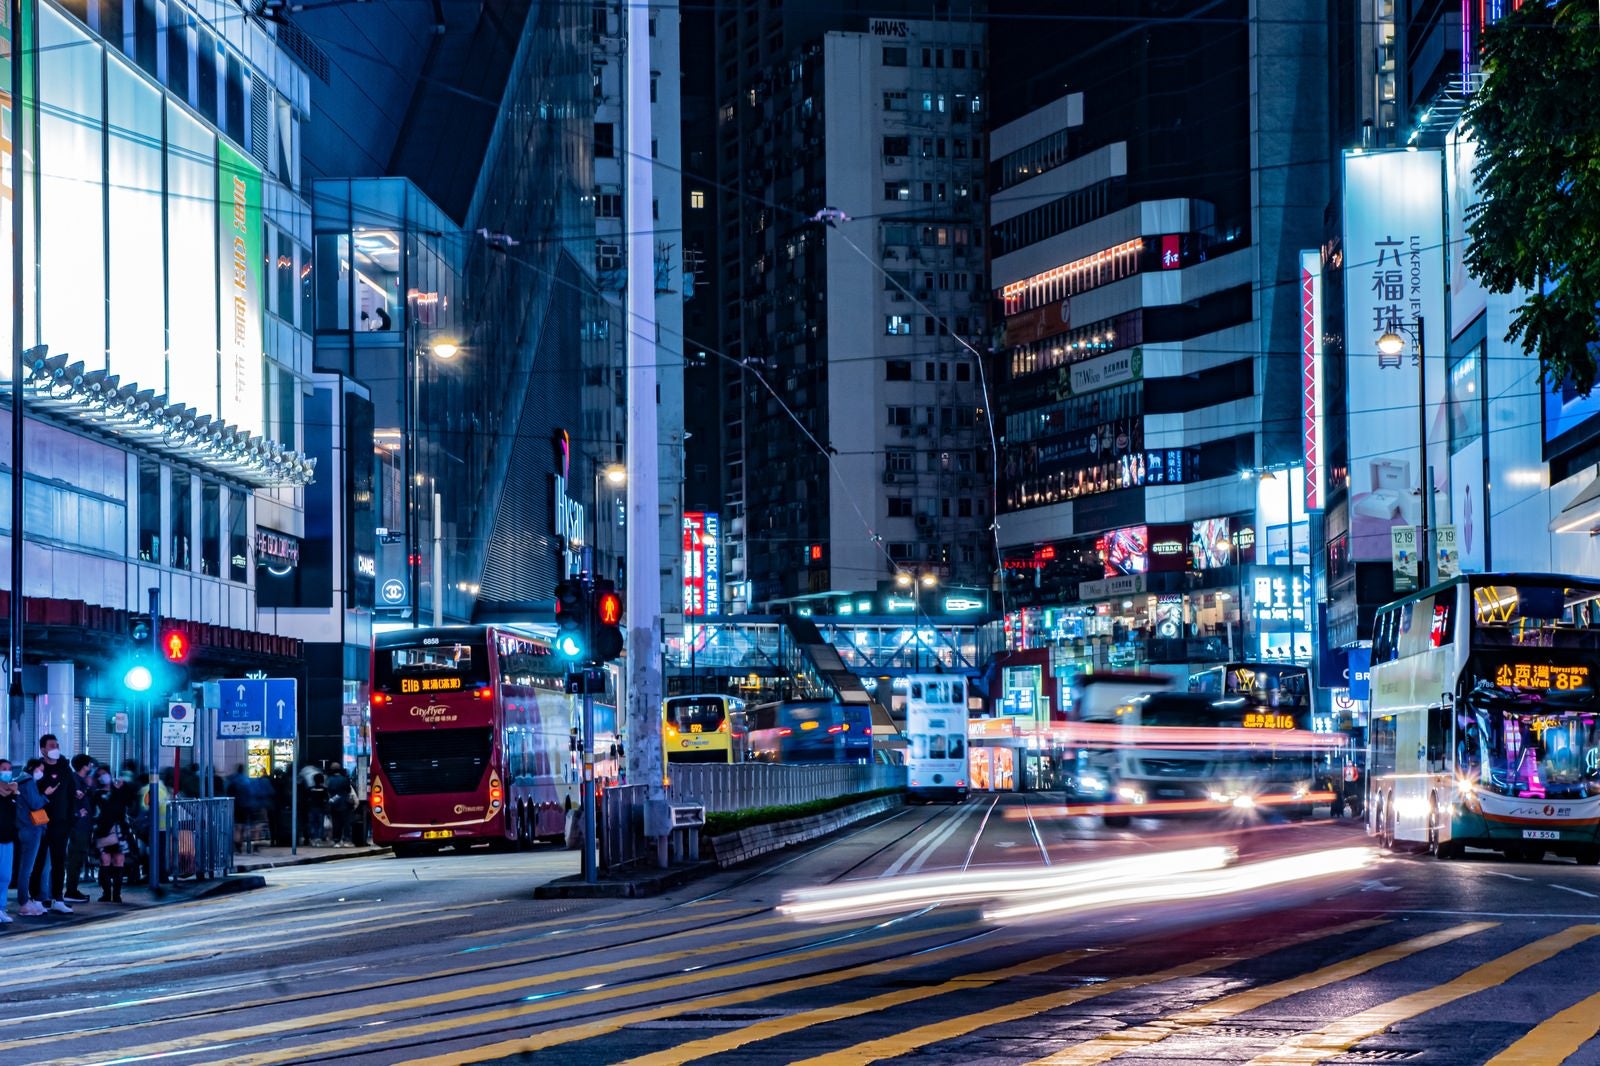 「【香港-銅鑼湾】信号待ちしている歩行者の前を走るバスや車」の写真